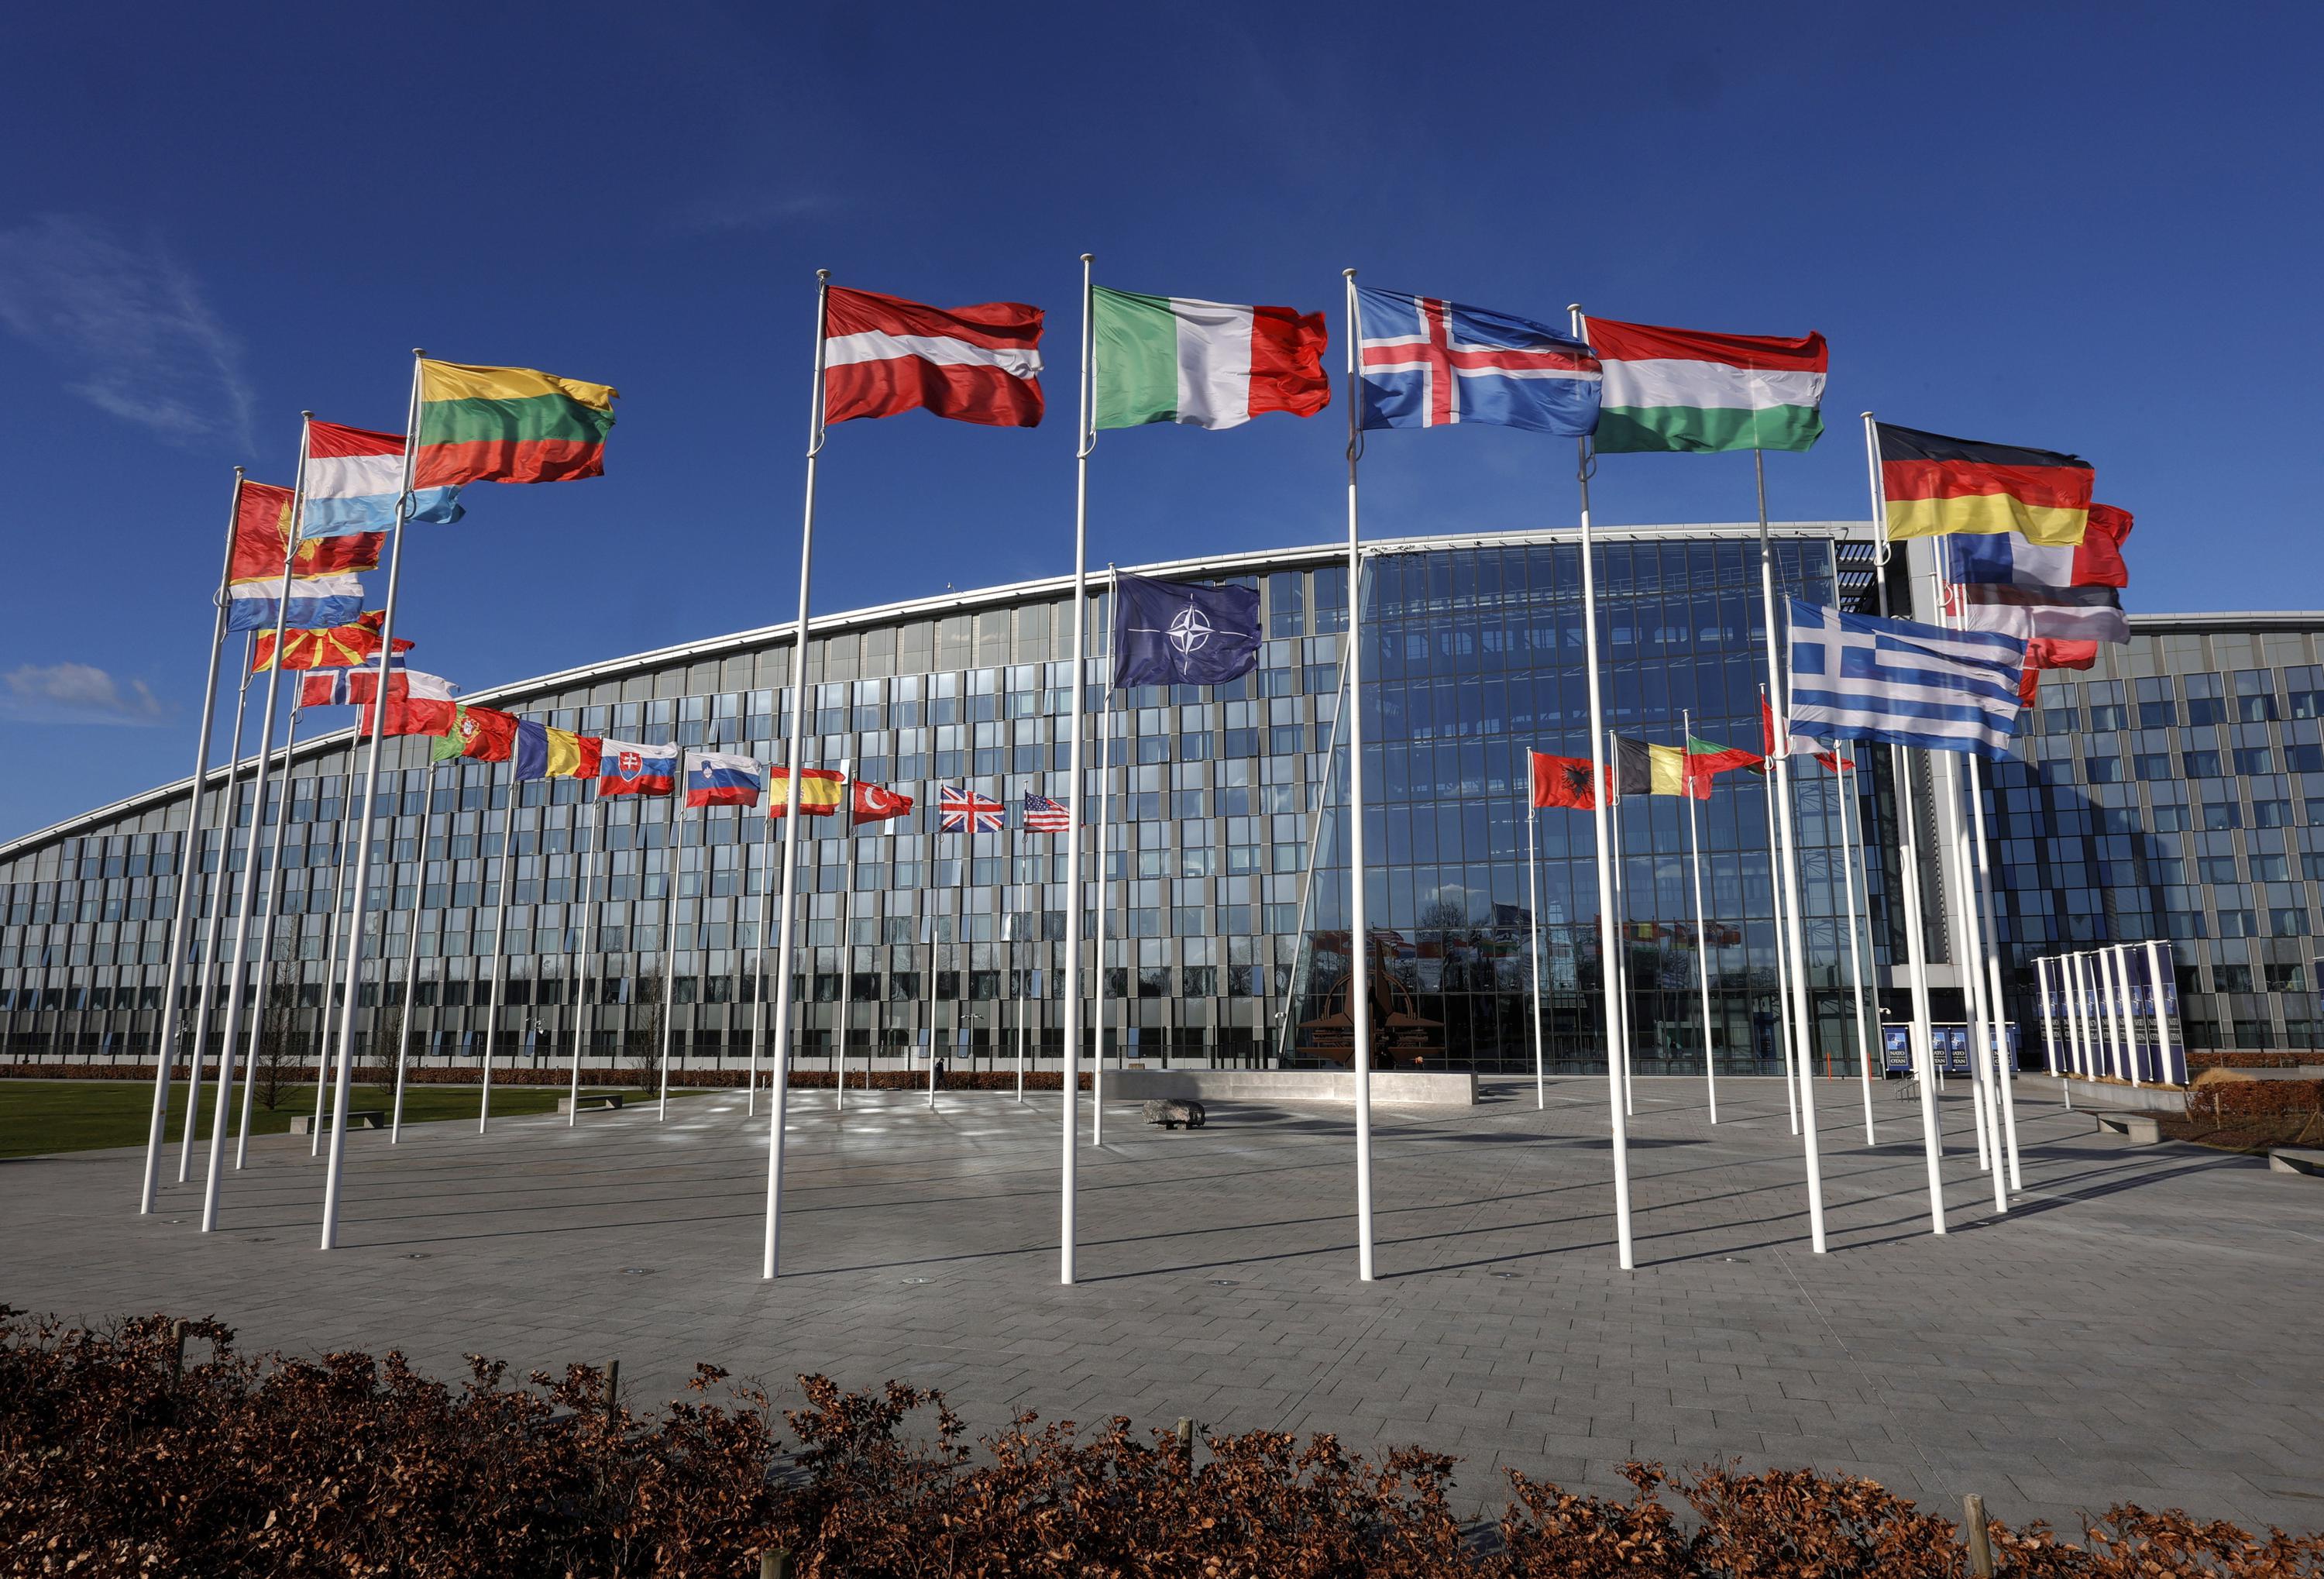 Explicador: Europa «neutral» se está retirando mientras la OTAN se prepara para expandirse